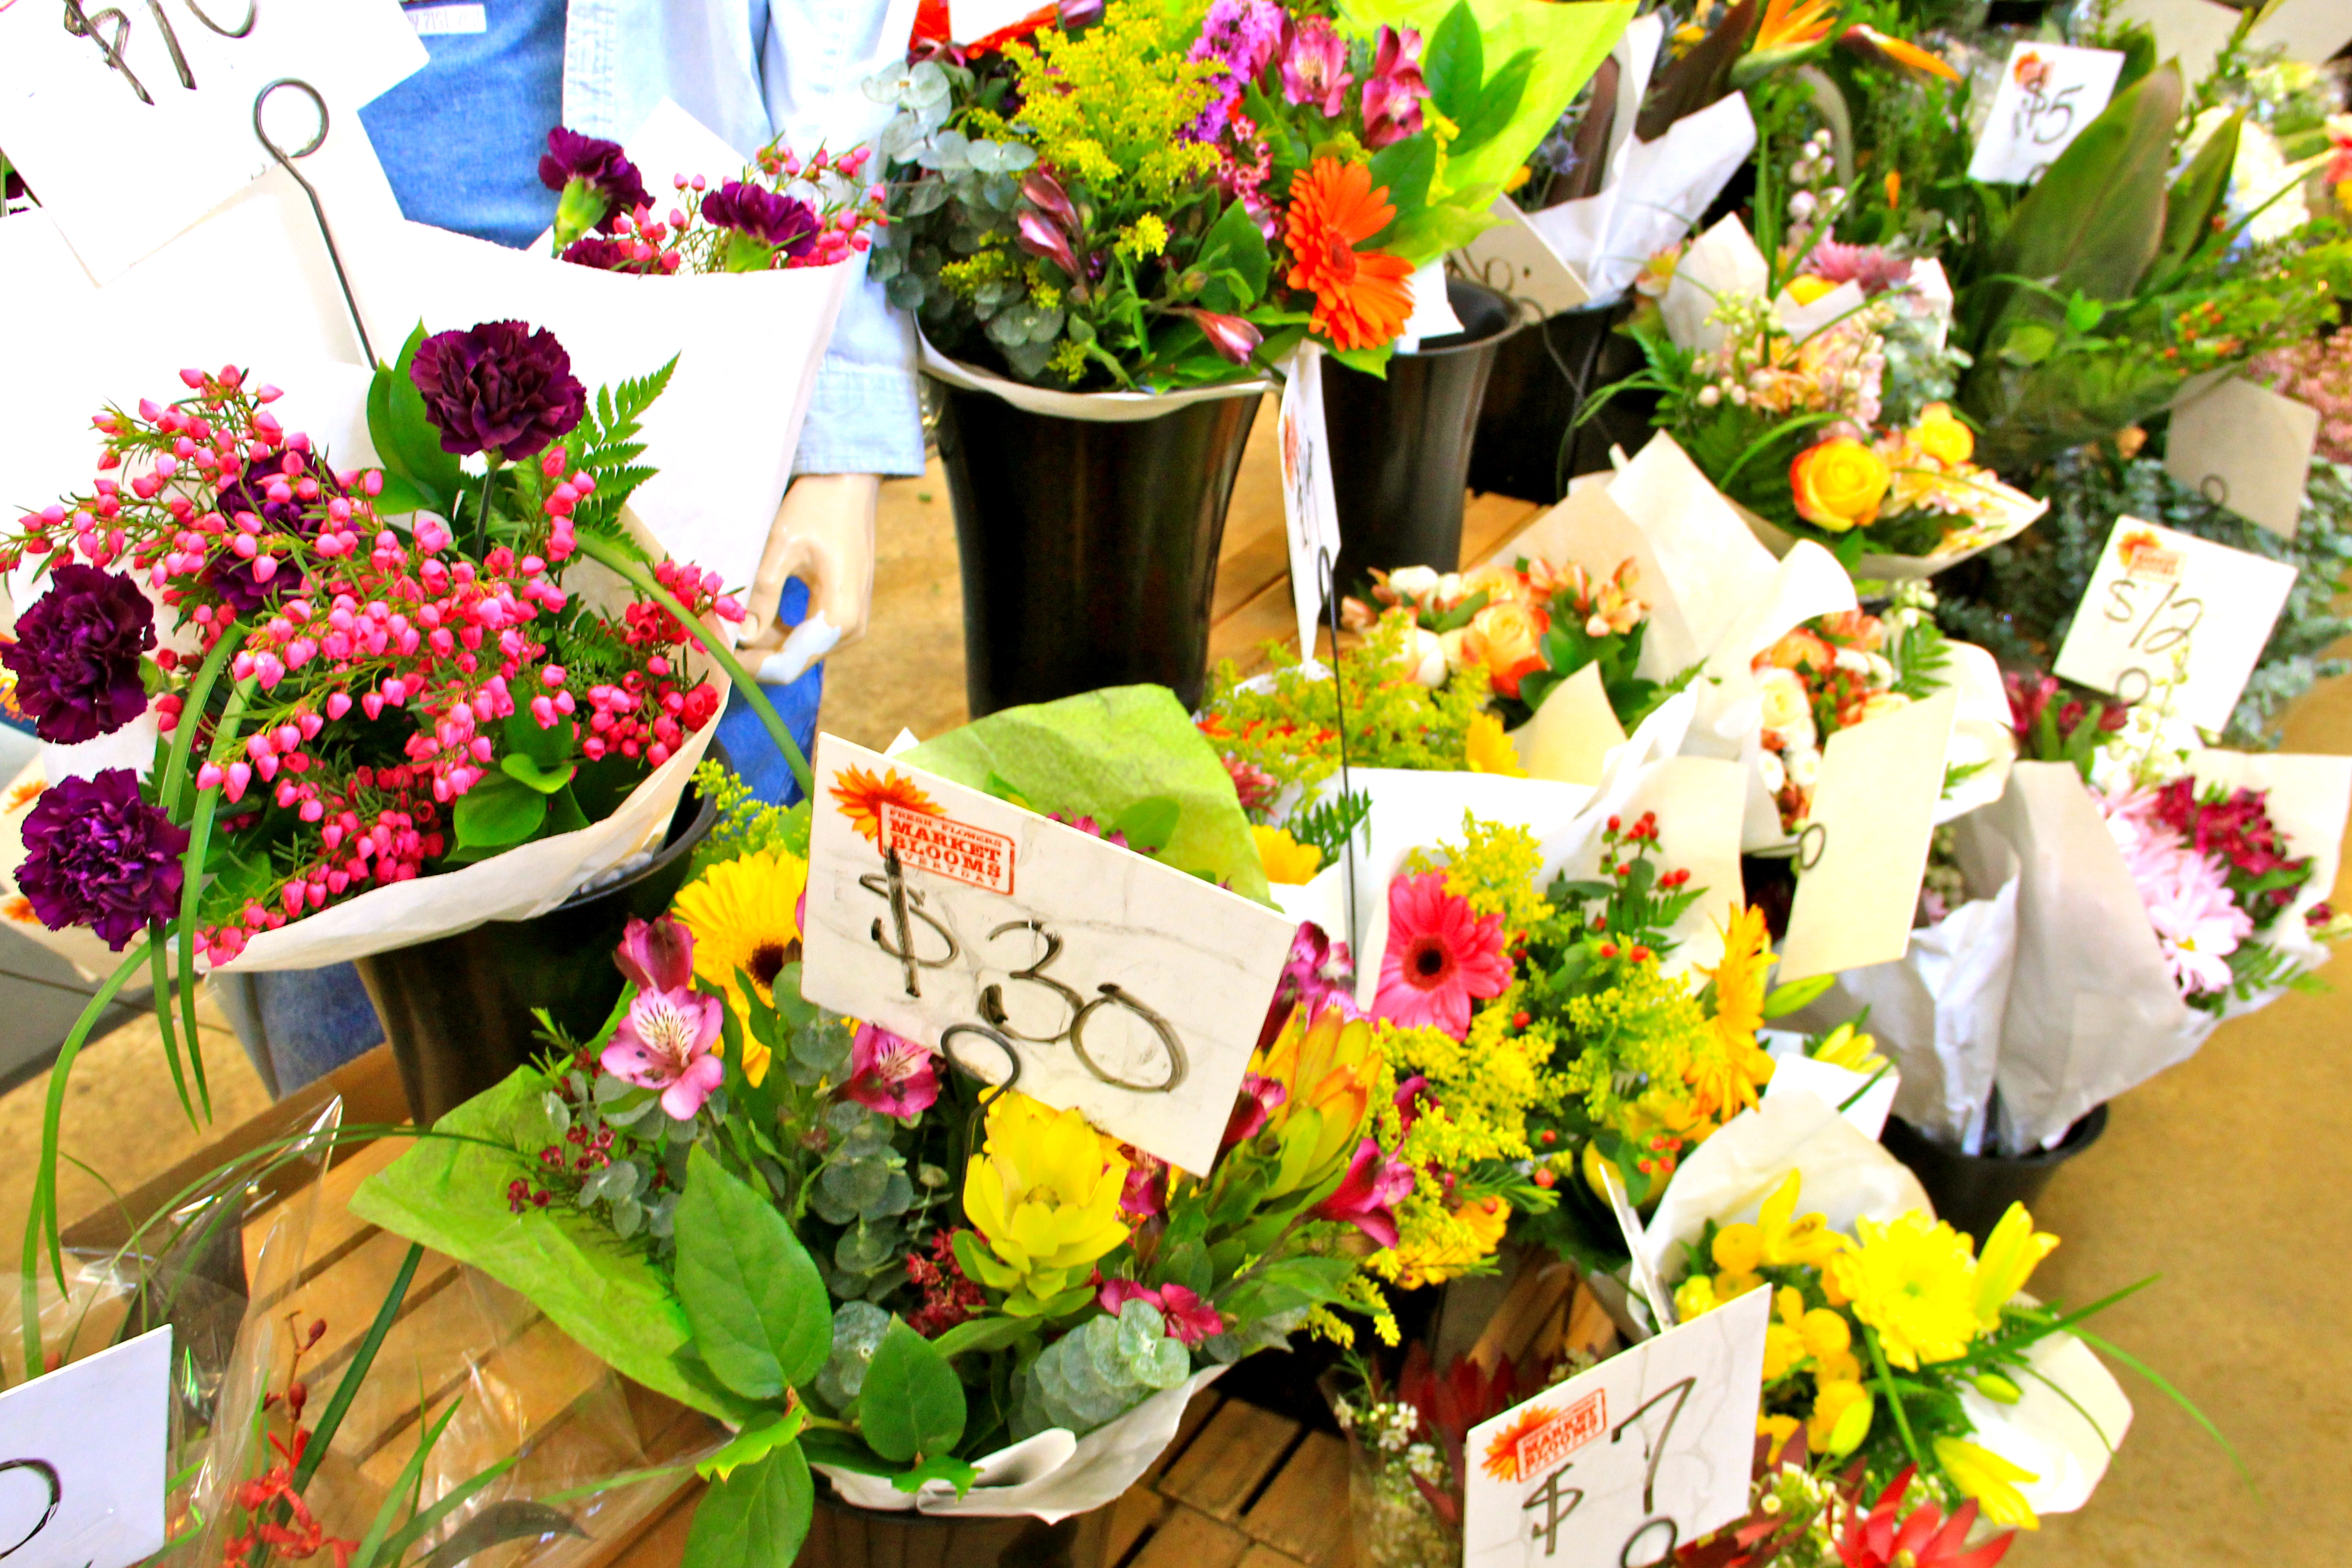 market_blooms_north_market_columbus_ohio